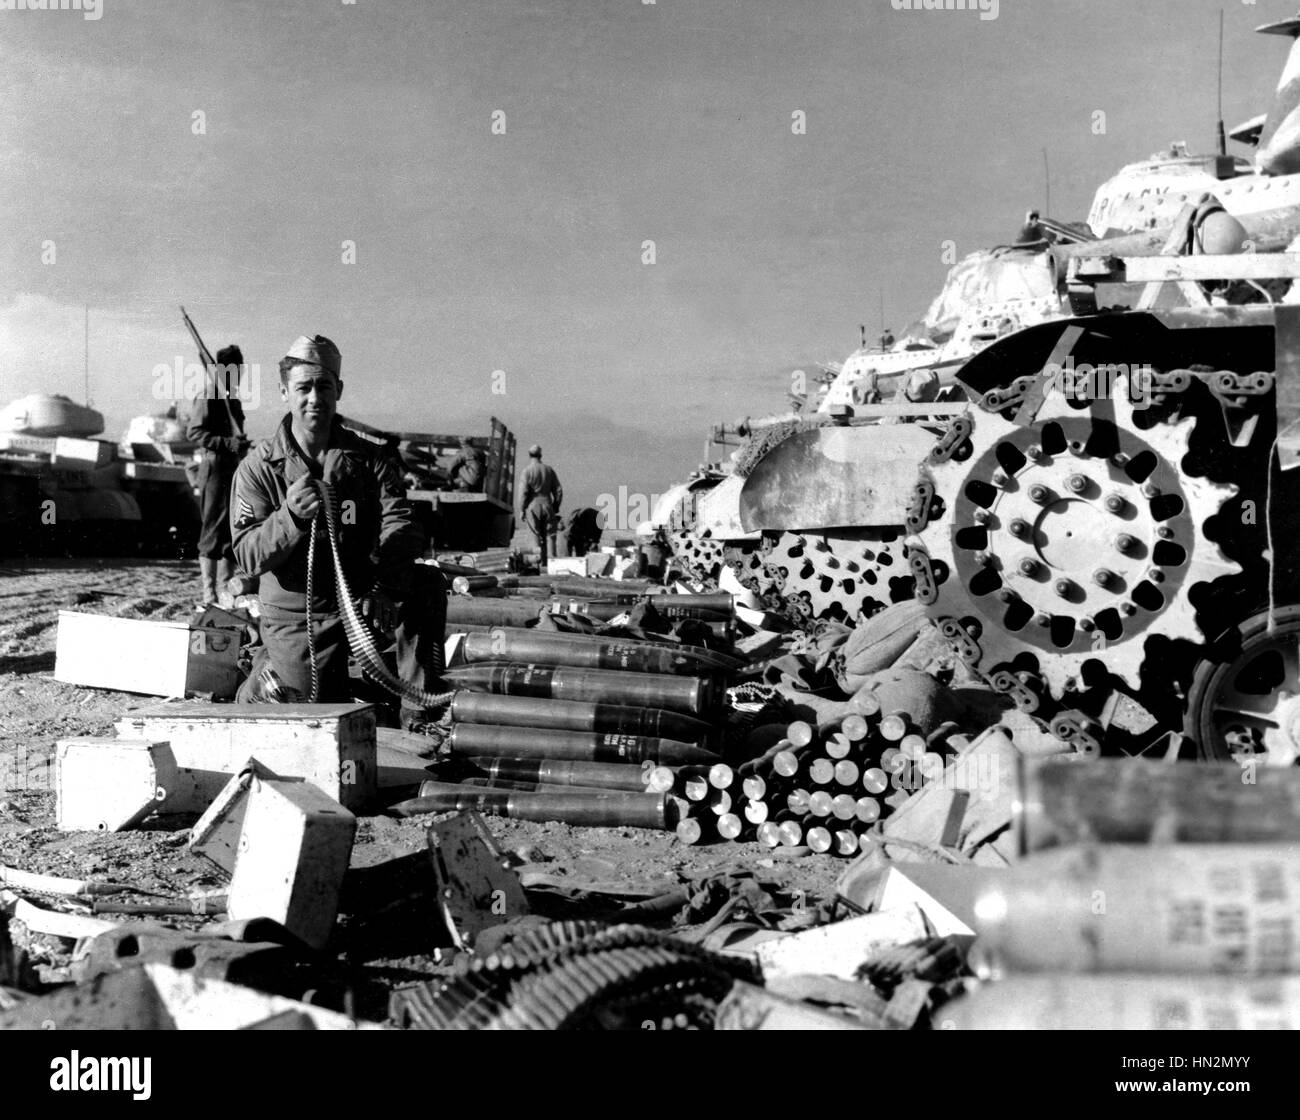 Panzer an der US-Wiedergutmachung und Kriegsmaterial Depot in Heliopolis. Während eines Kampfes erlitt die britische Armee schwere Verluste, die durch den deutschen zugefügt. Diese Niederlage führte zu dem britischen Rückzug nach El Alamein in Ägypten. 13. Juni 1942 Ägypten - Weltkrieg Washingt Stockfoto